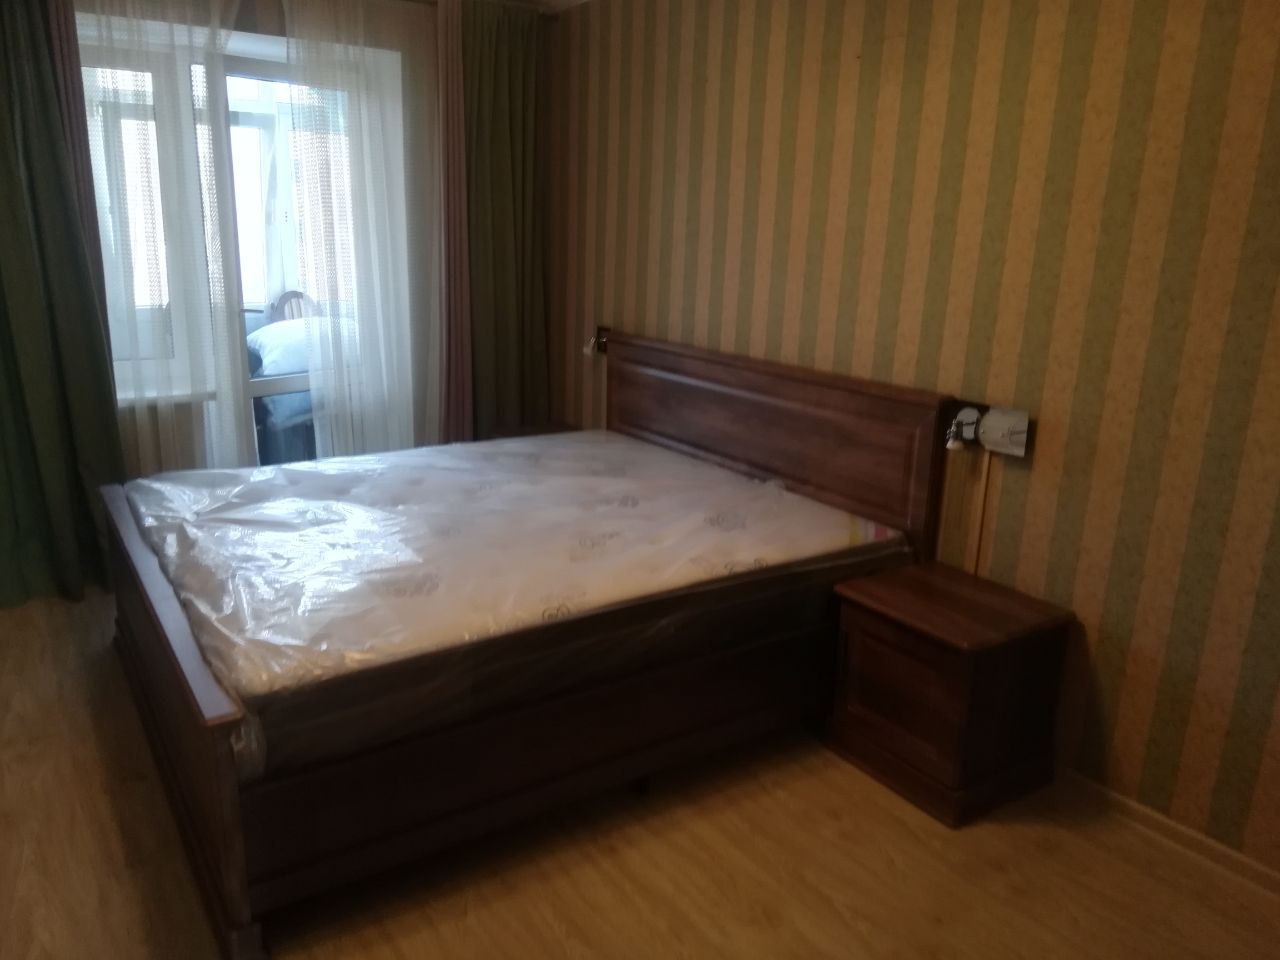 Двуспальная кровать "Прованс " 160 х 200 с подъемным мех-ом цвет дуб коньяк изножье высокое